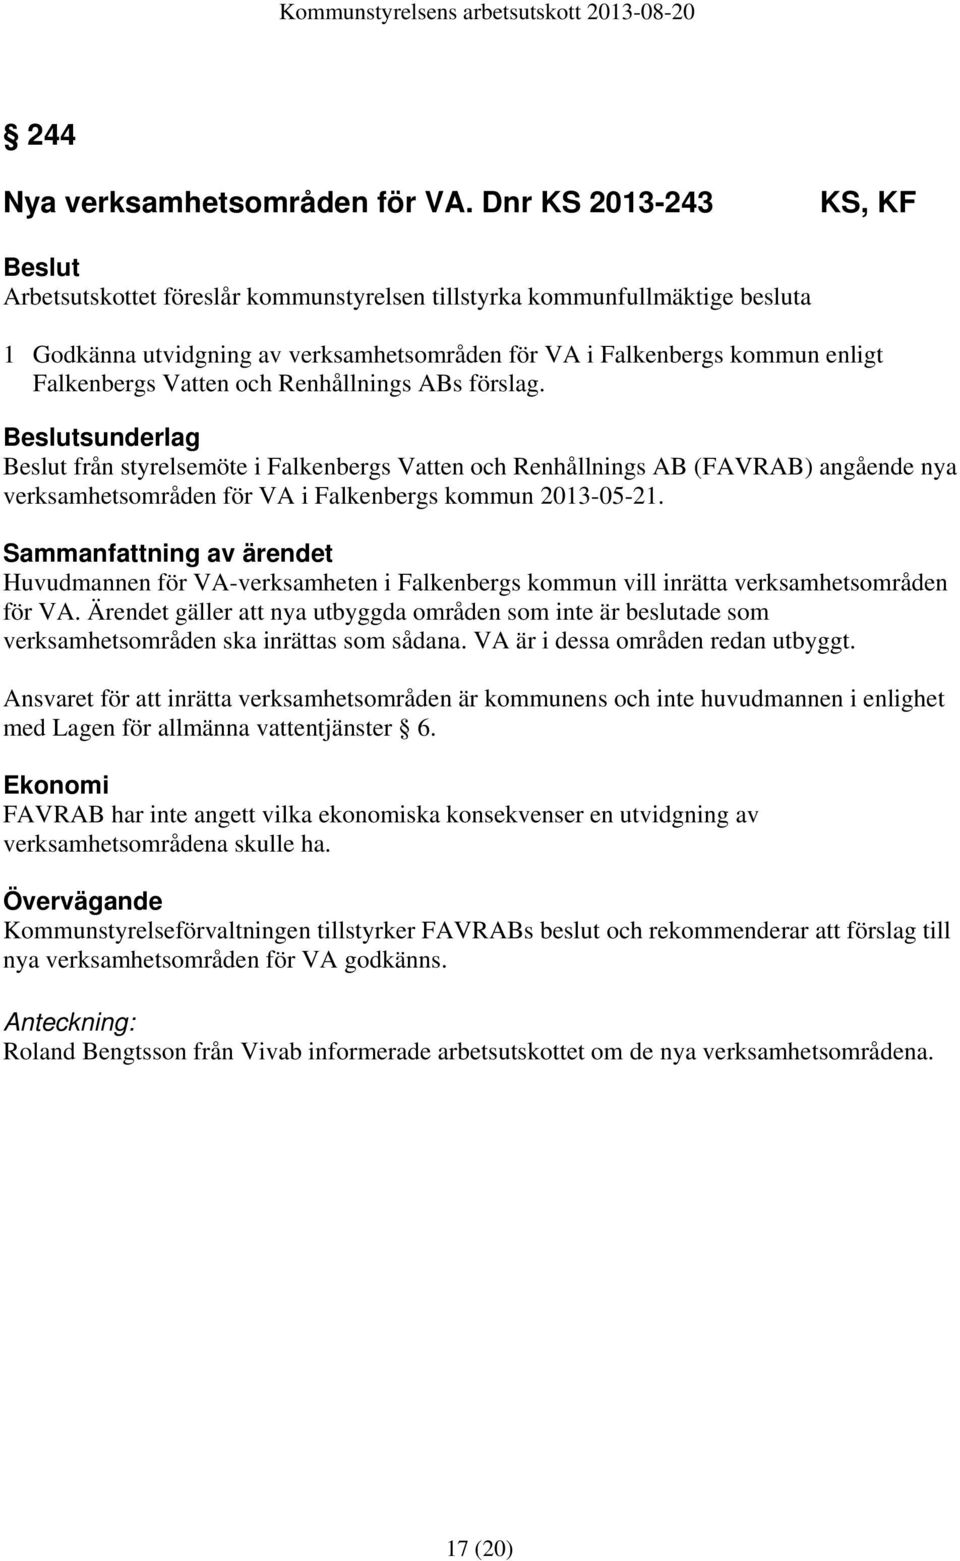 och Renhållnings ABs förslag. sunderlag från styrelsemöte i Falkenbergs Vatten och Renhållnings AB (FAVRAB) angående nya verksamhetsområden för VA i Falkenbergs kommun 2013-05-21.